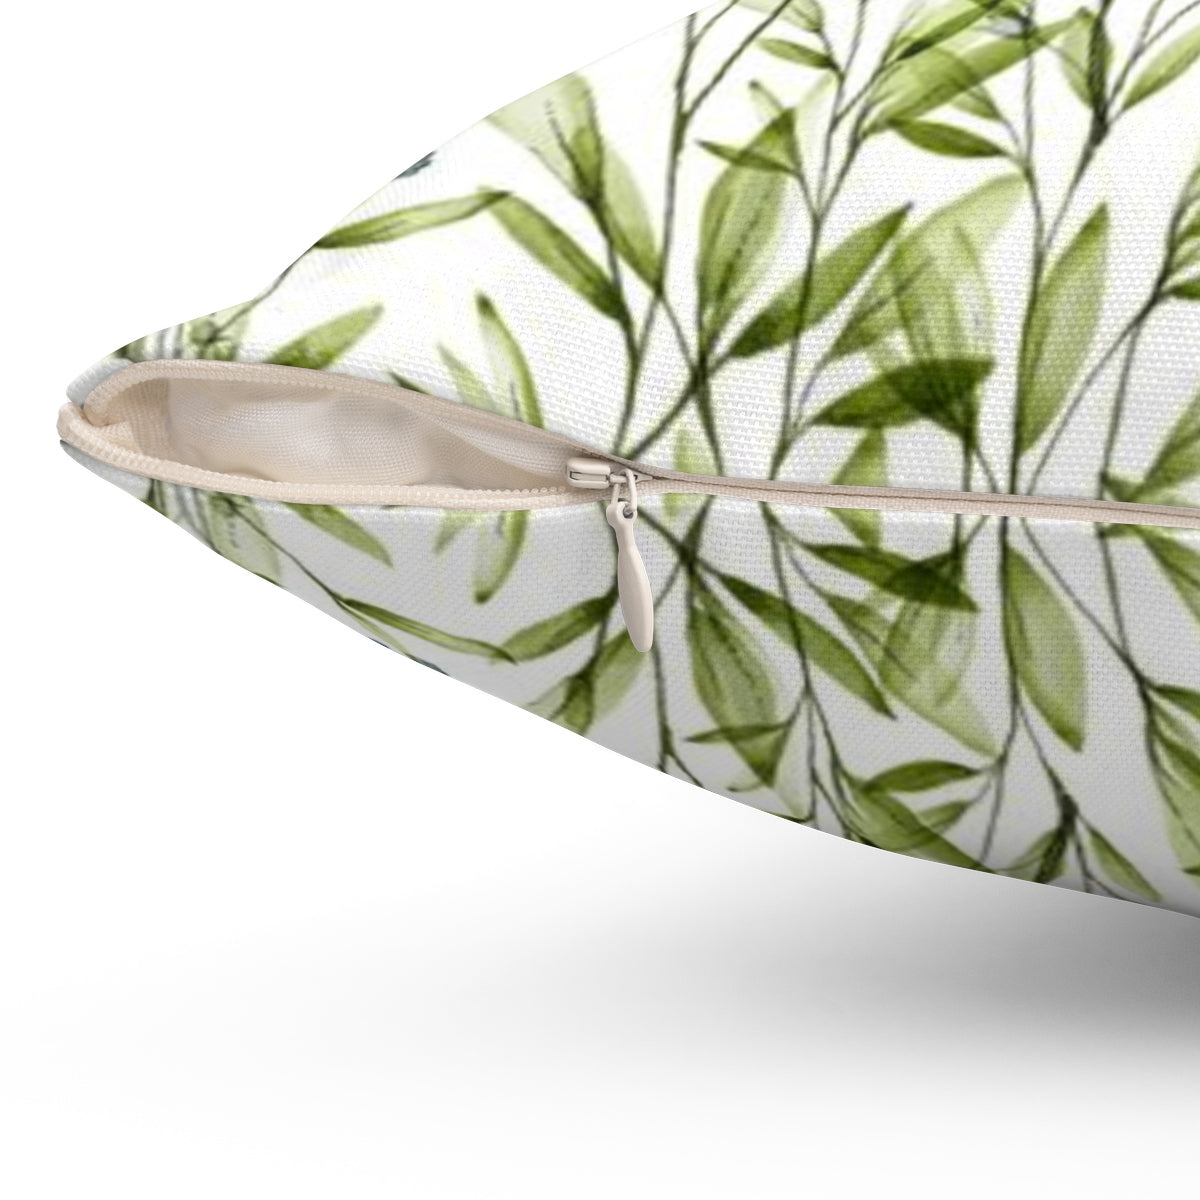 Side view of green decorative pillow - Liz Kapiloto Art & Design